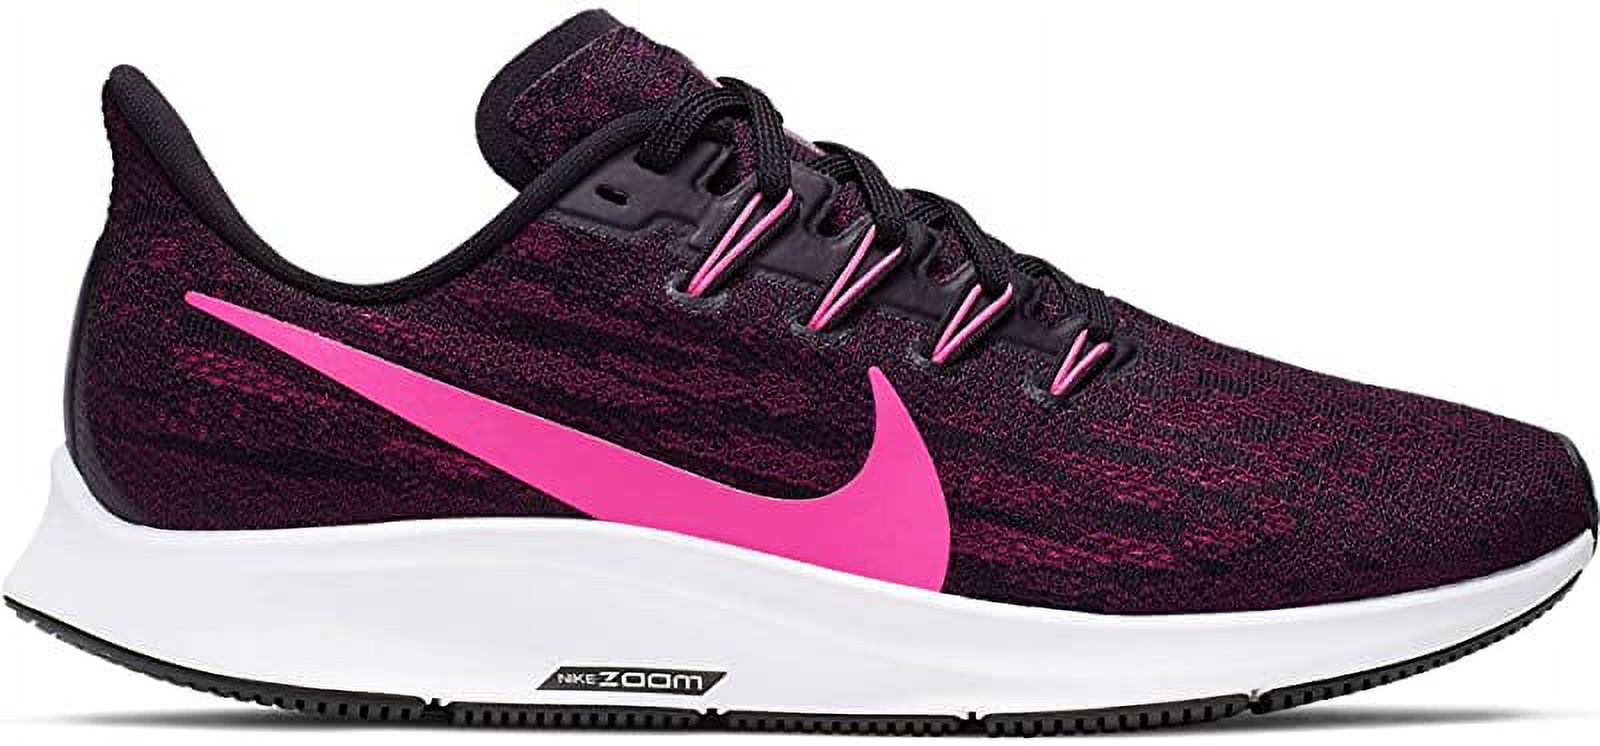 Nike Women's Air Zoom Pegasus 36 Running Shoe, Black/Pink/Berry, 8.5 B(M) US - image 1 of 7